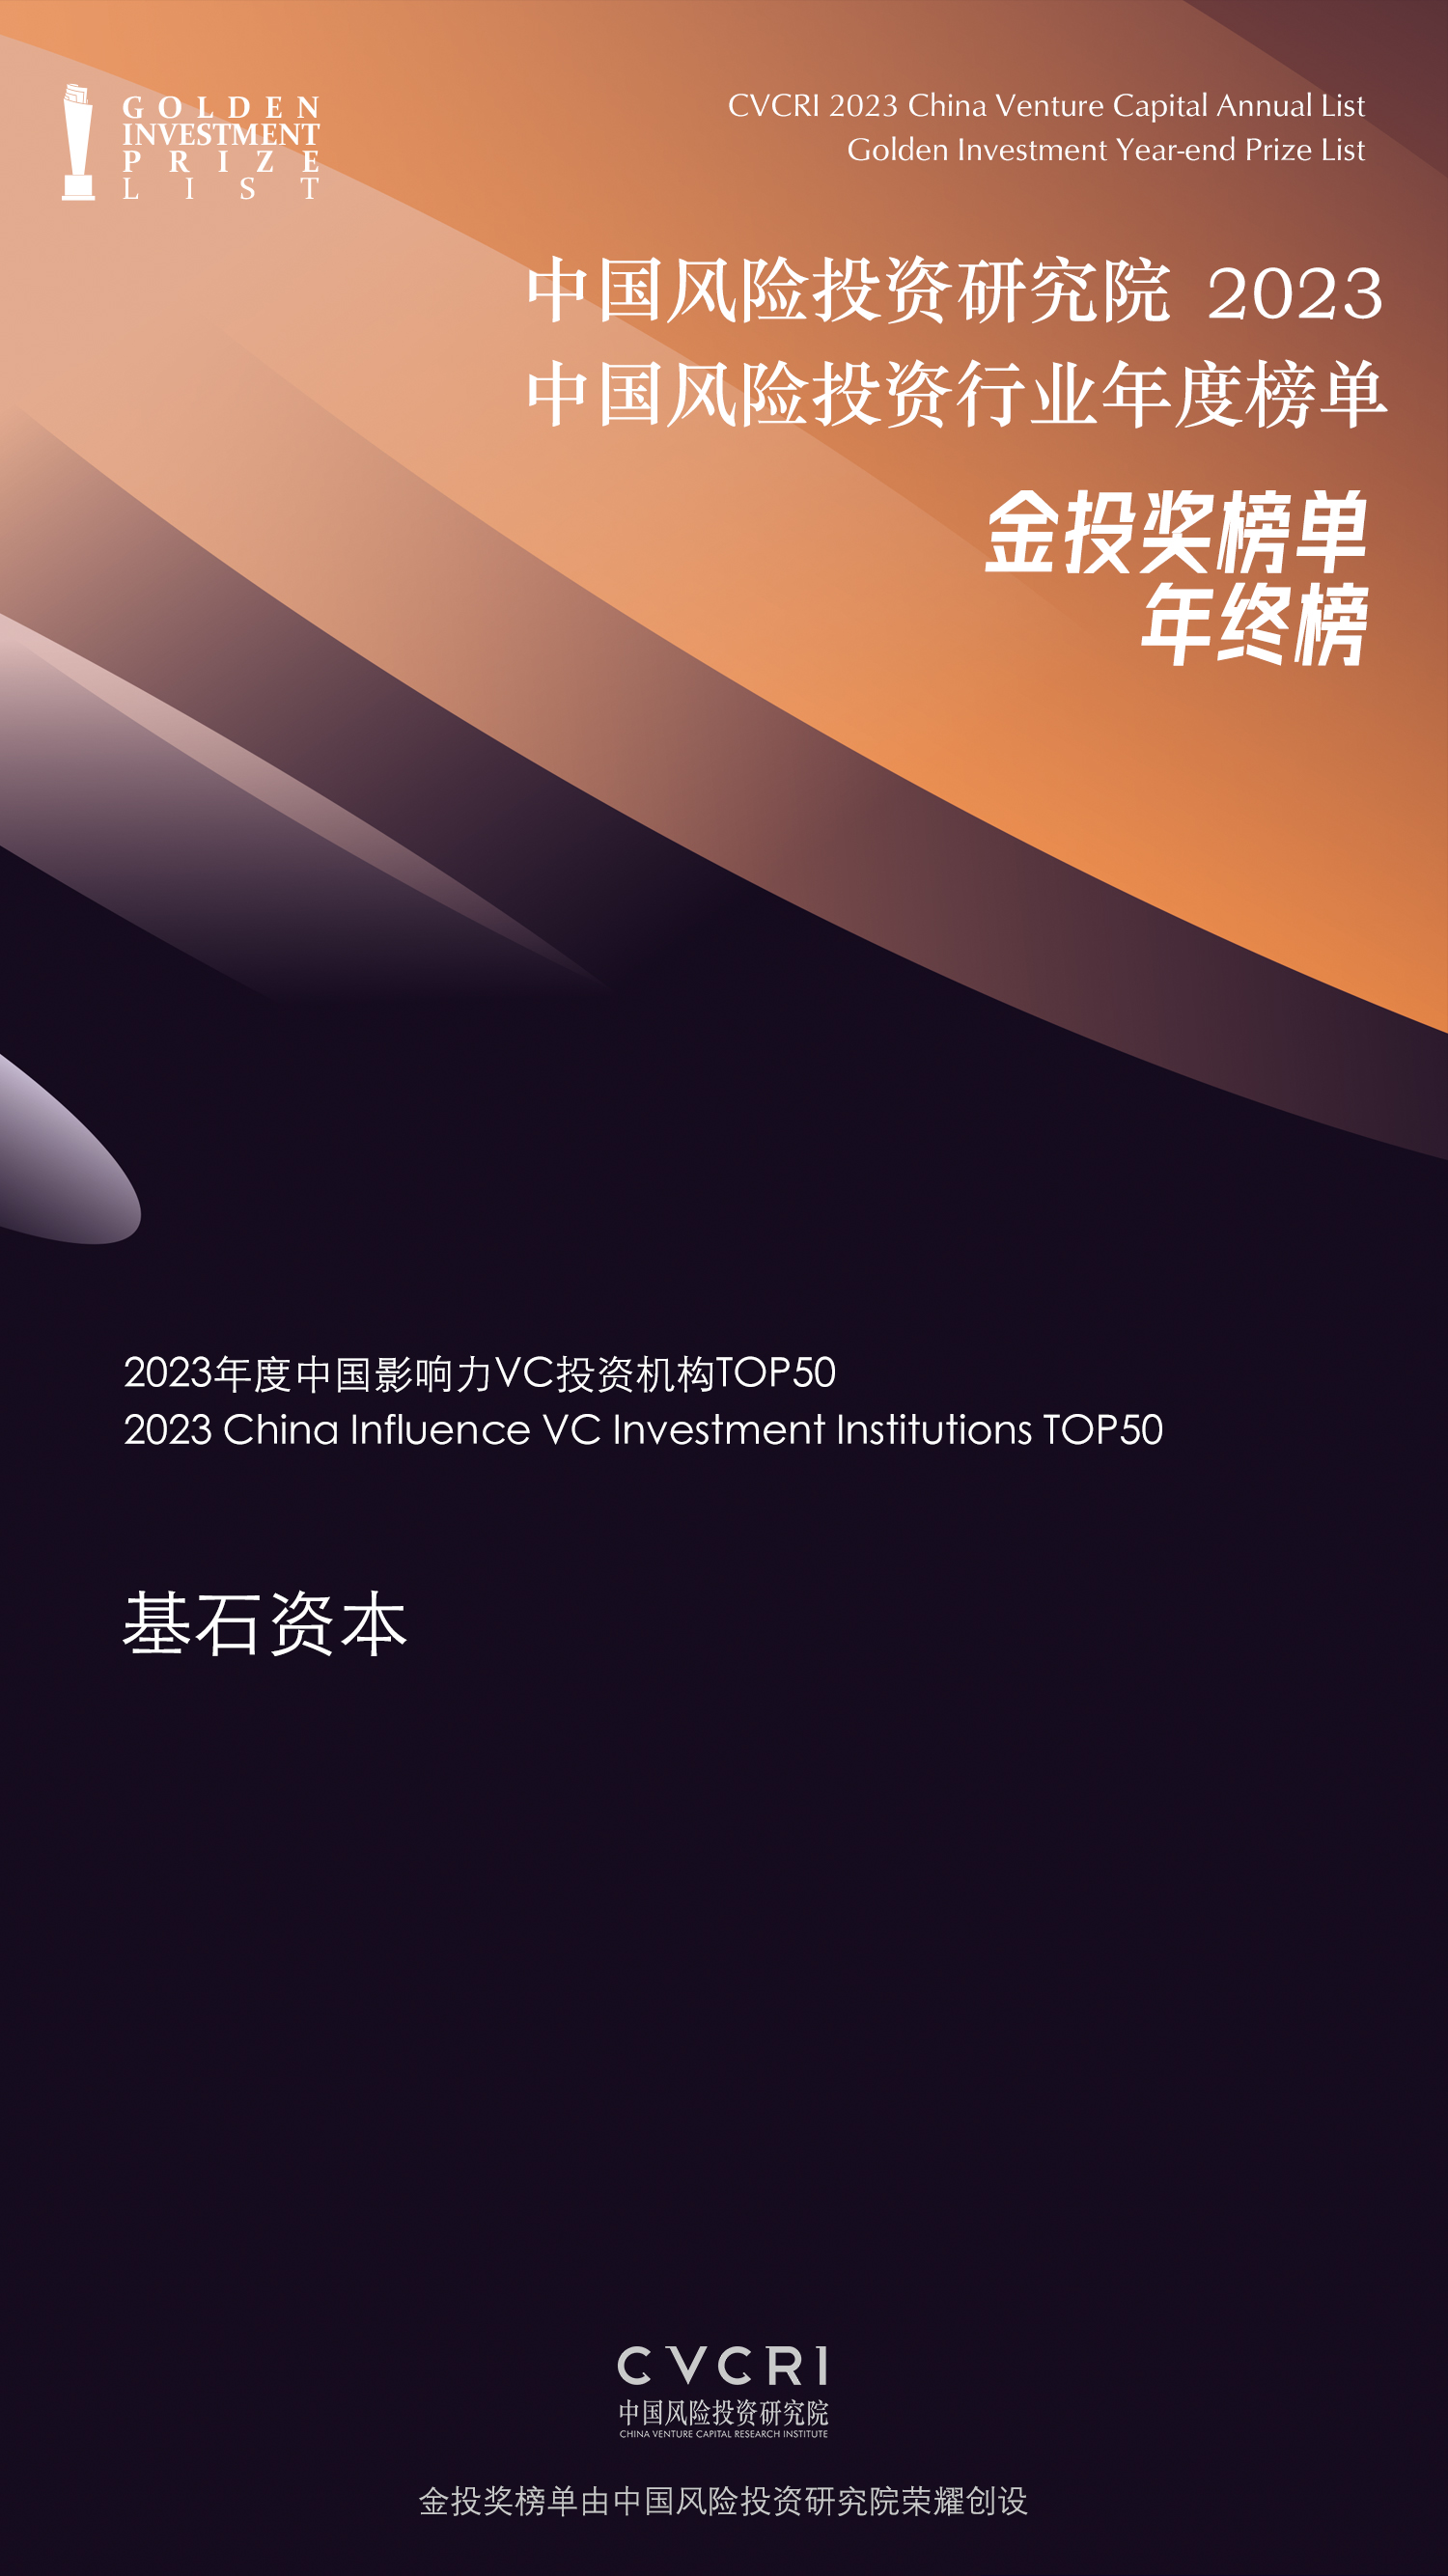 2023年度中国影响力VC投资机构TOP50.jpg